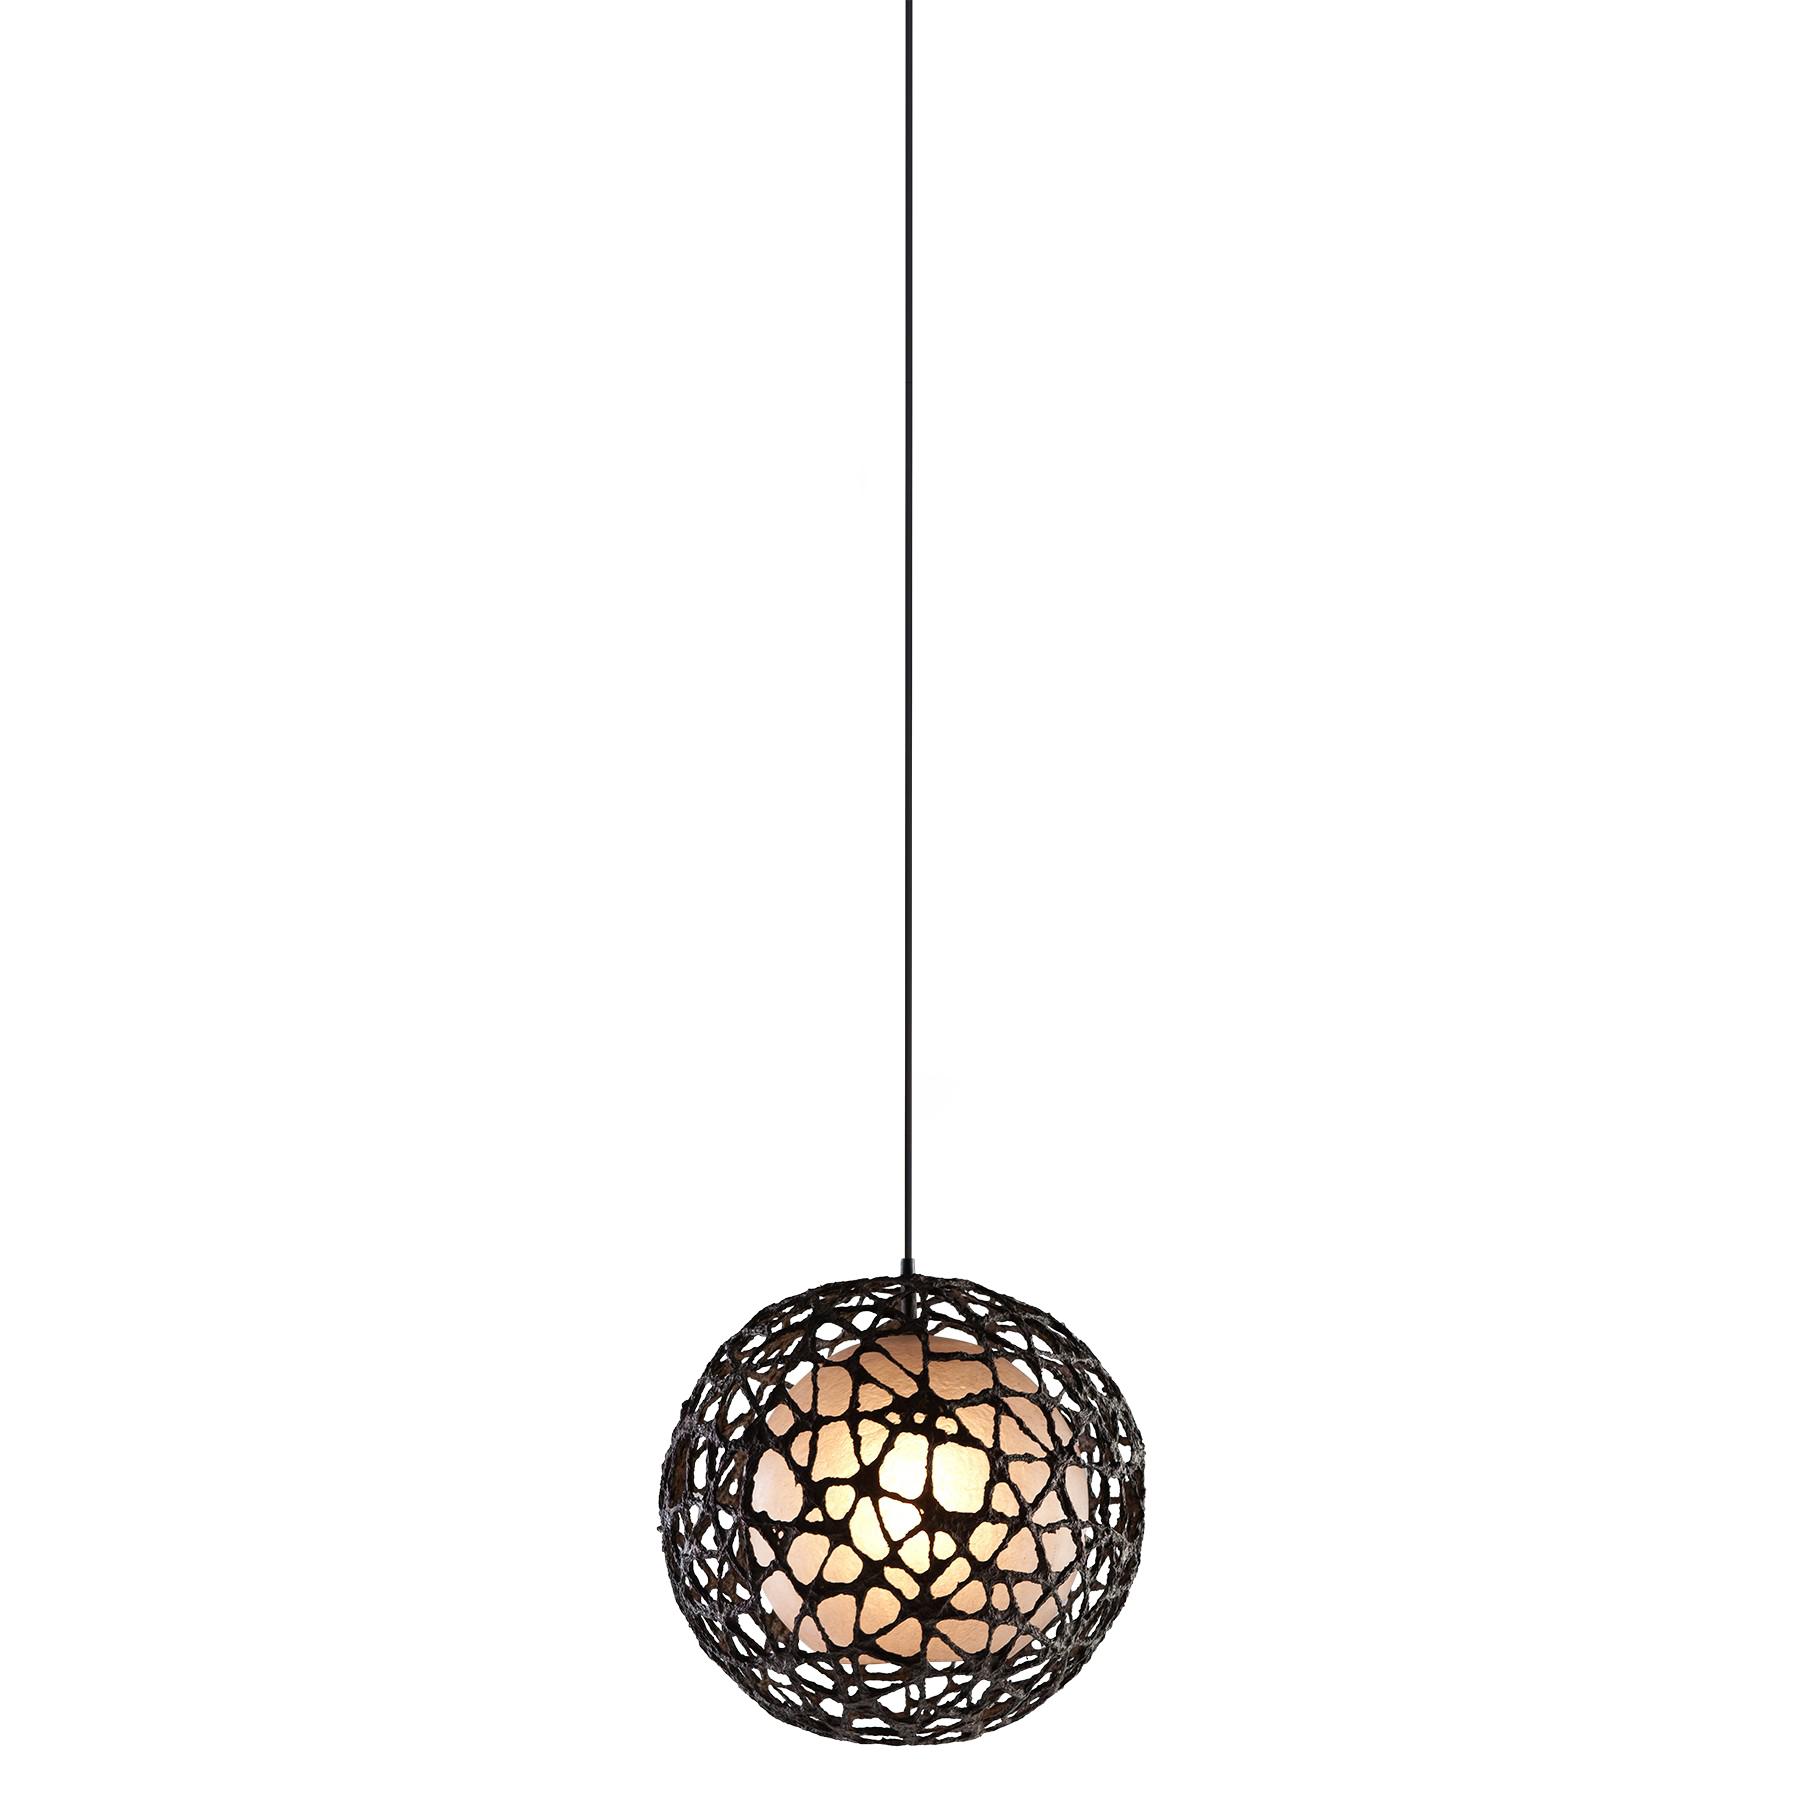 Chandelier Light Lamp PNG Transparent Image